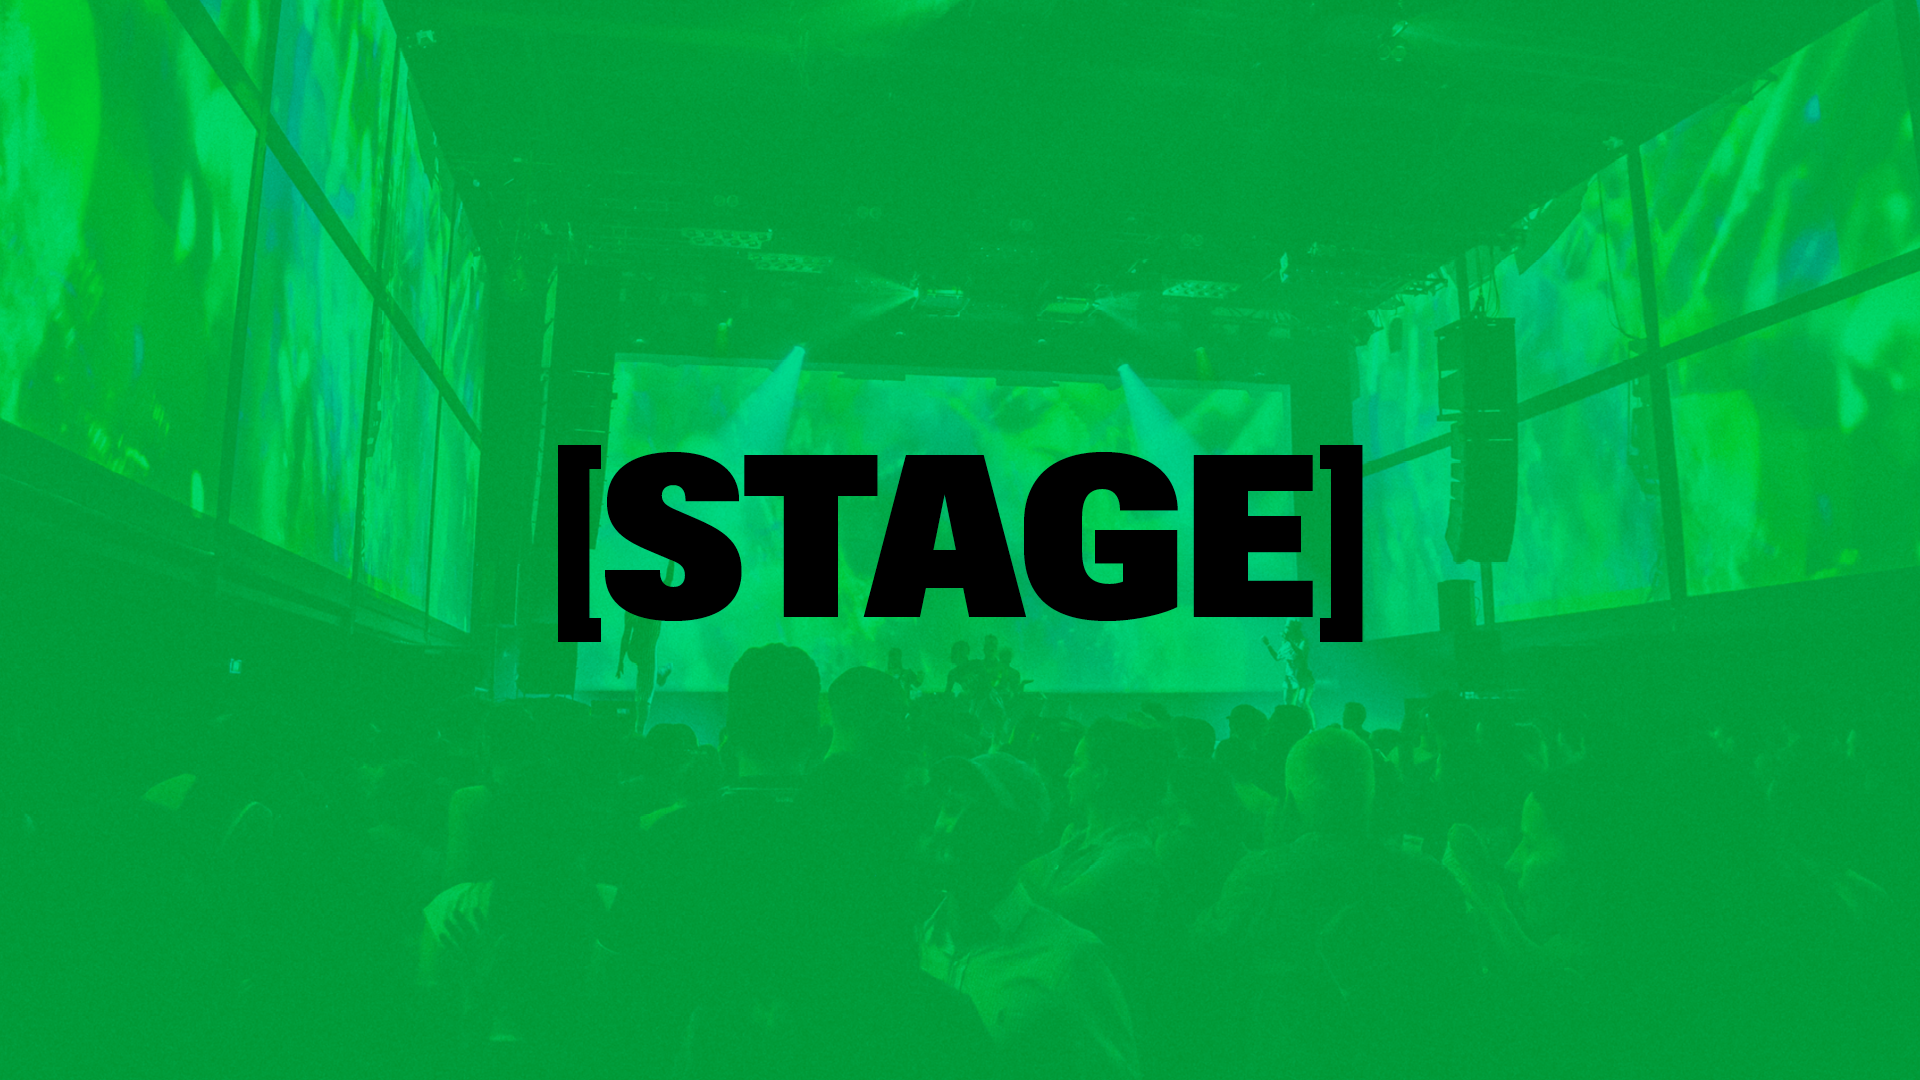 [STAGE] Stage communication numérique et social media